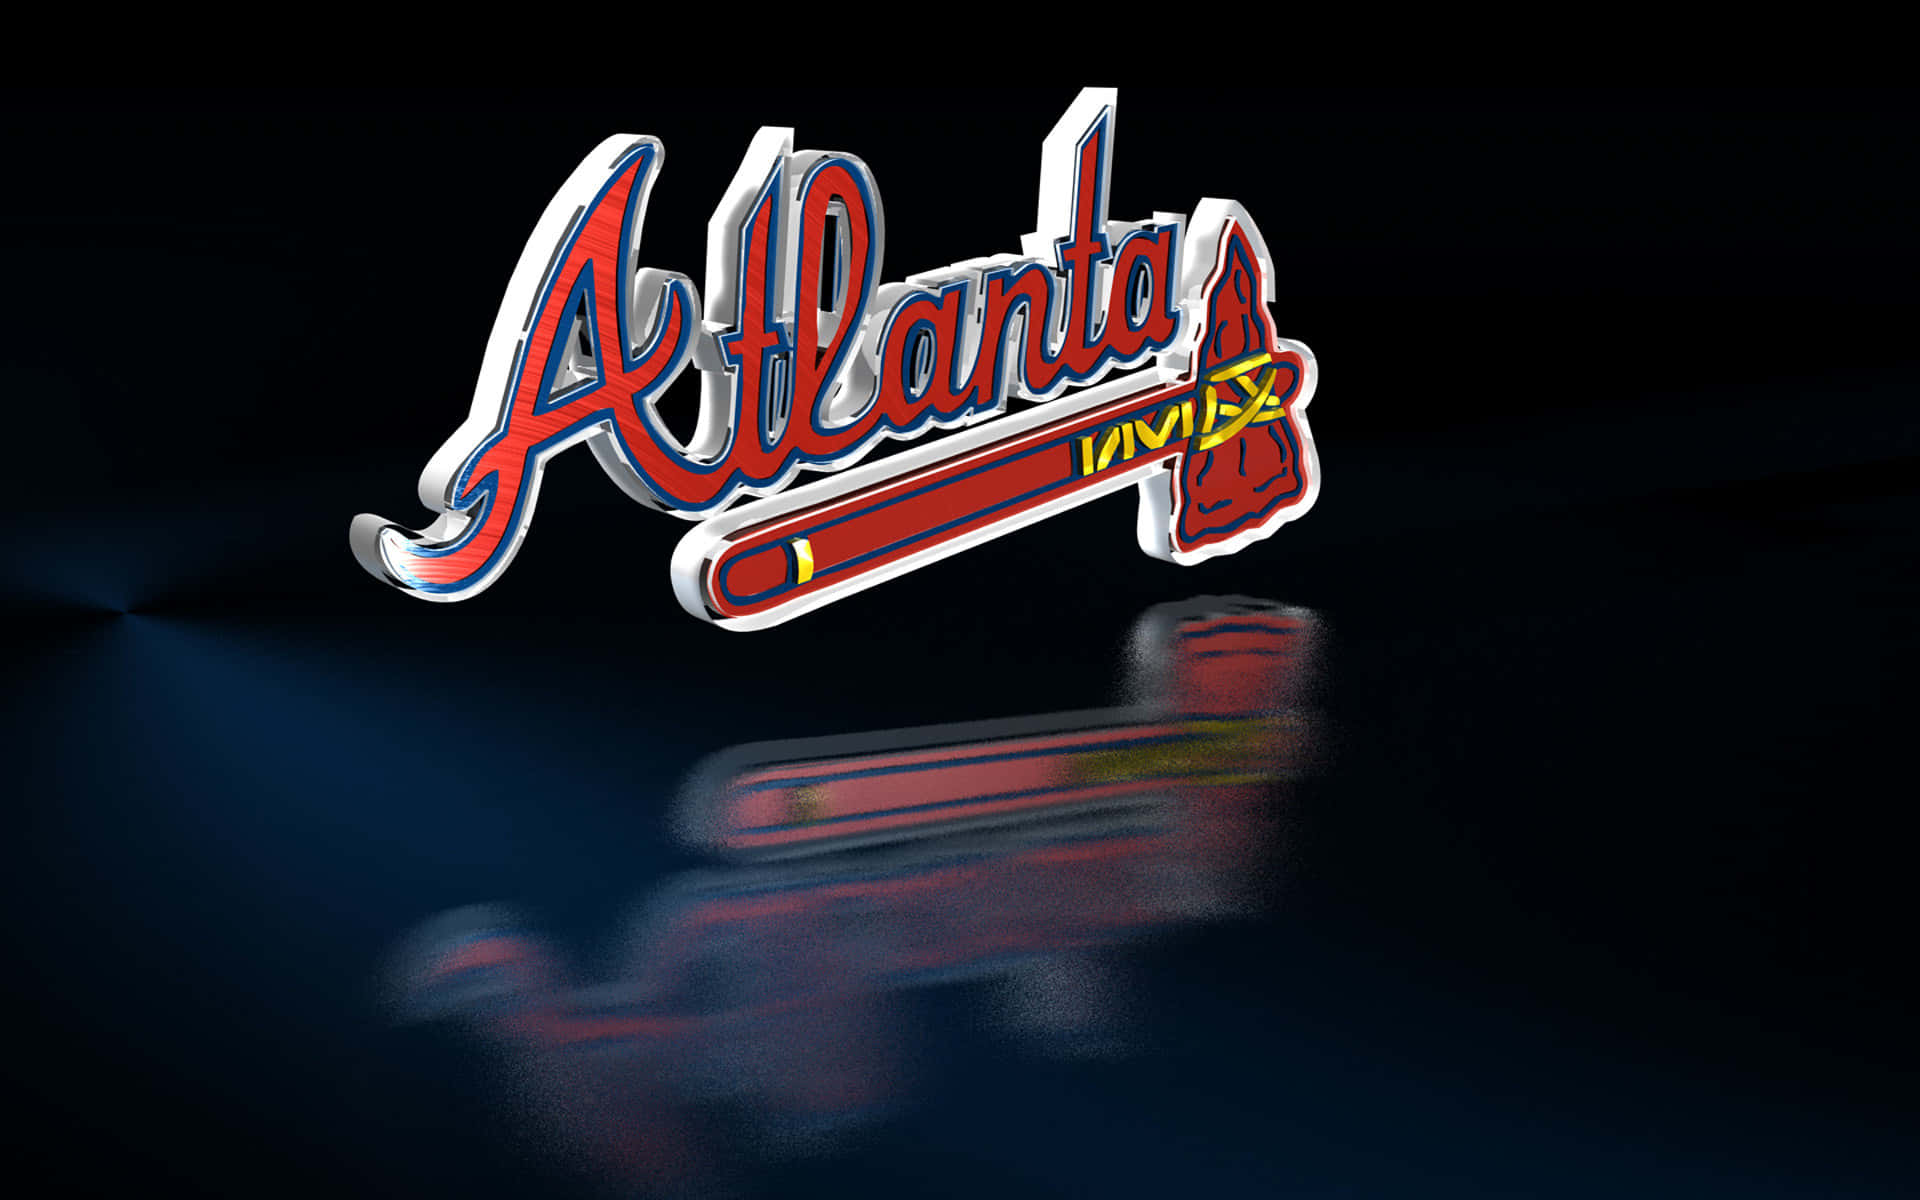 Atlantabraves Leder Vägen Atop Baseballens Landskap. Wallpaper